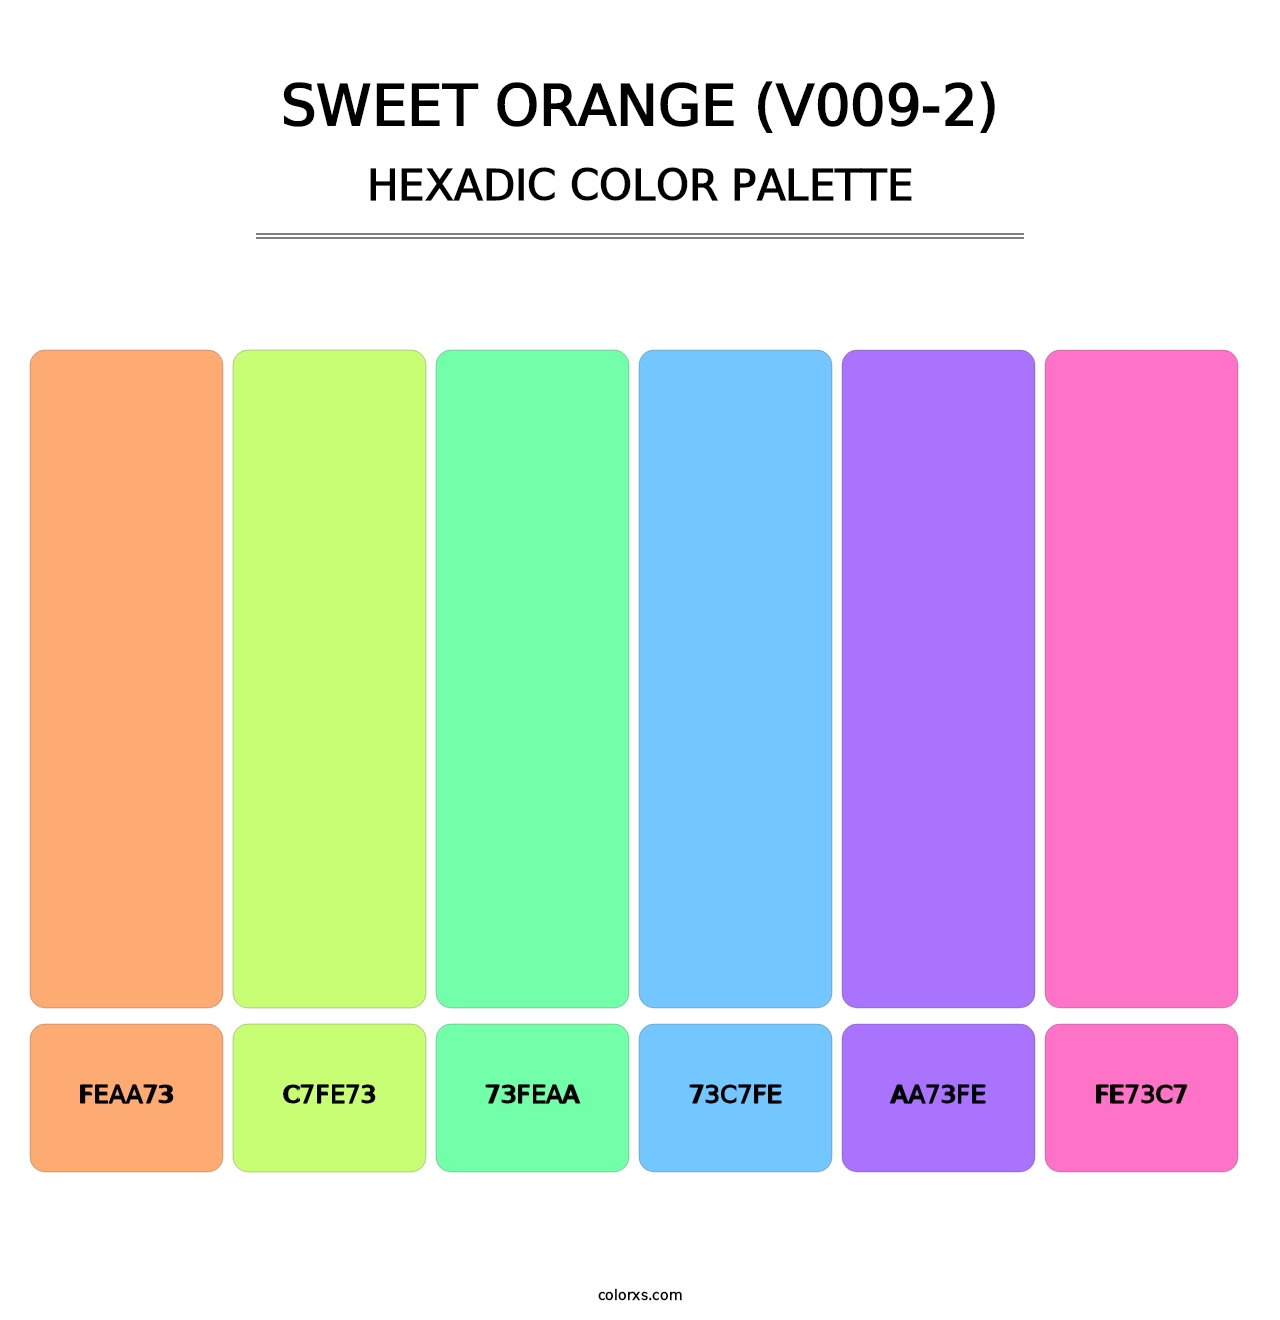 Sweet Orange (V009-2) - Hexadic Color Palette